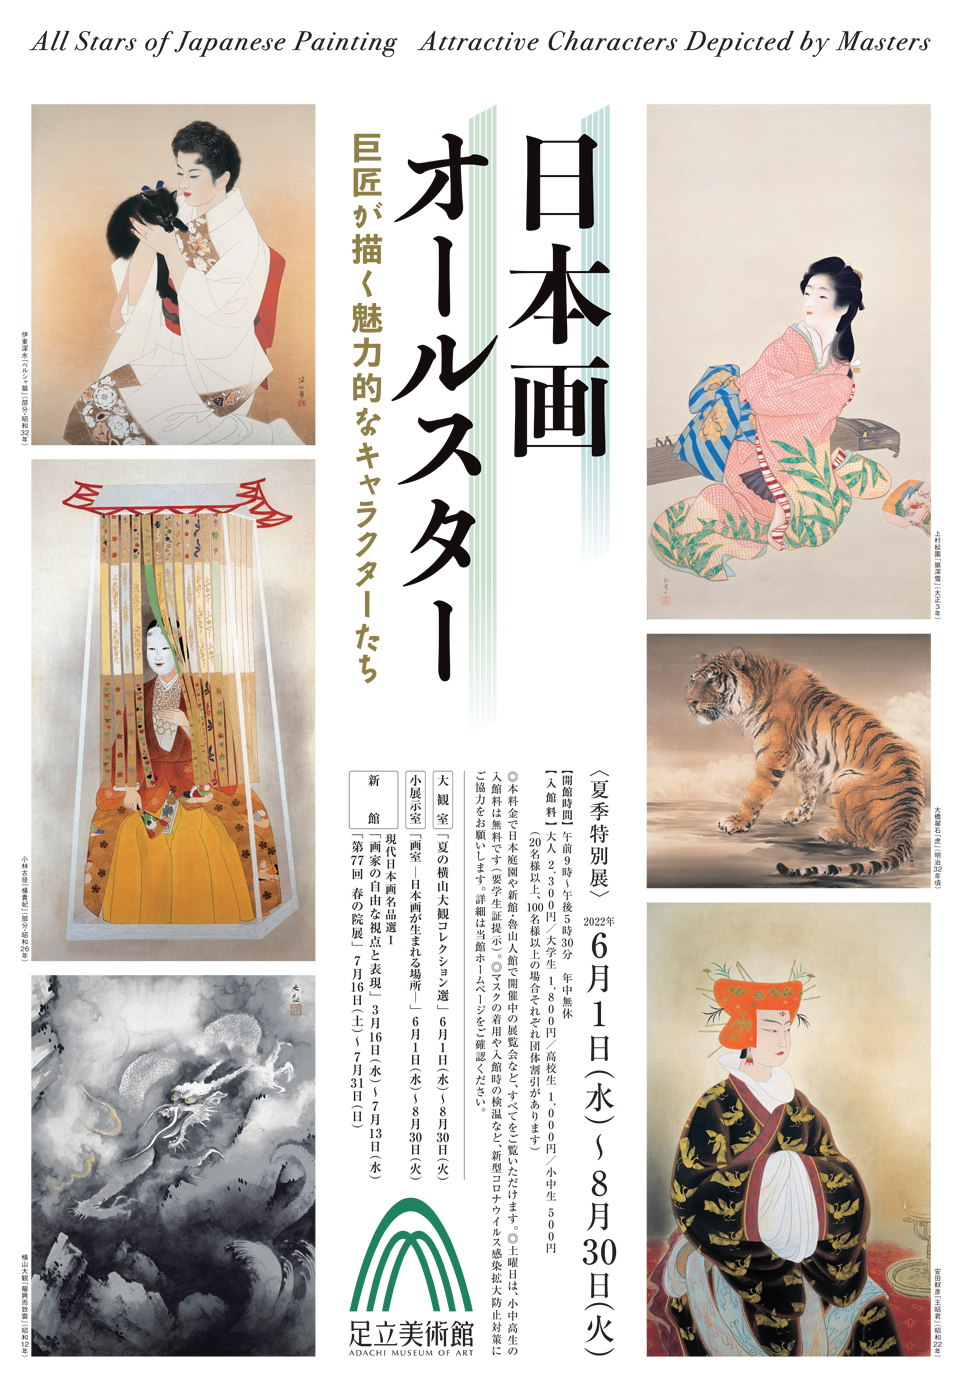 足立美術館 夏季特別展「日本画オールスター 巨匠が描く魅力的なキャラクターたち」